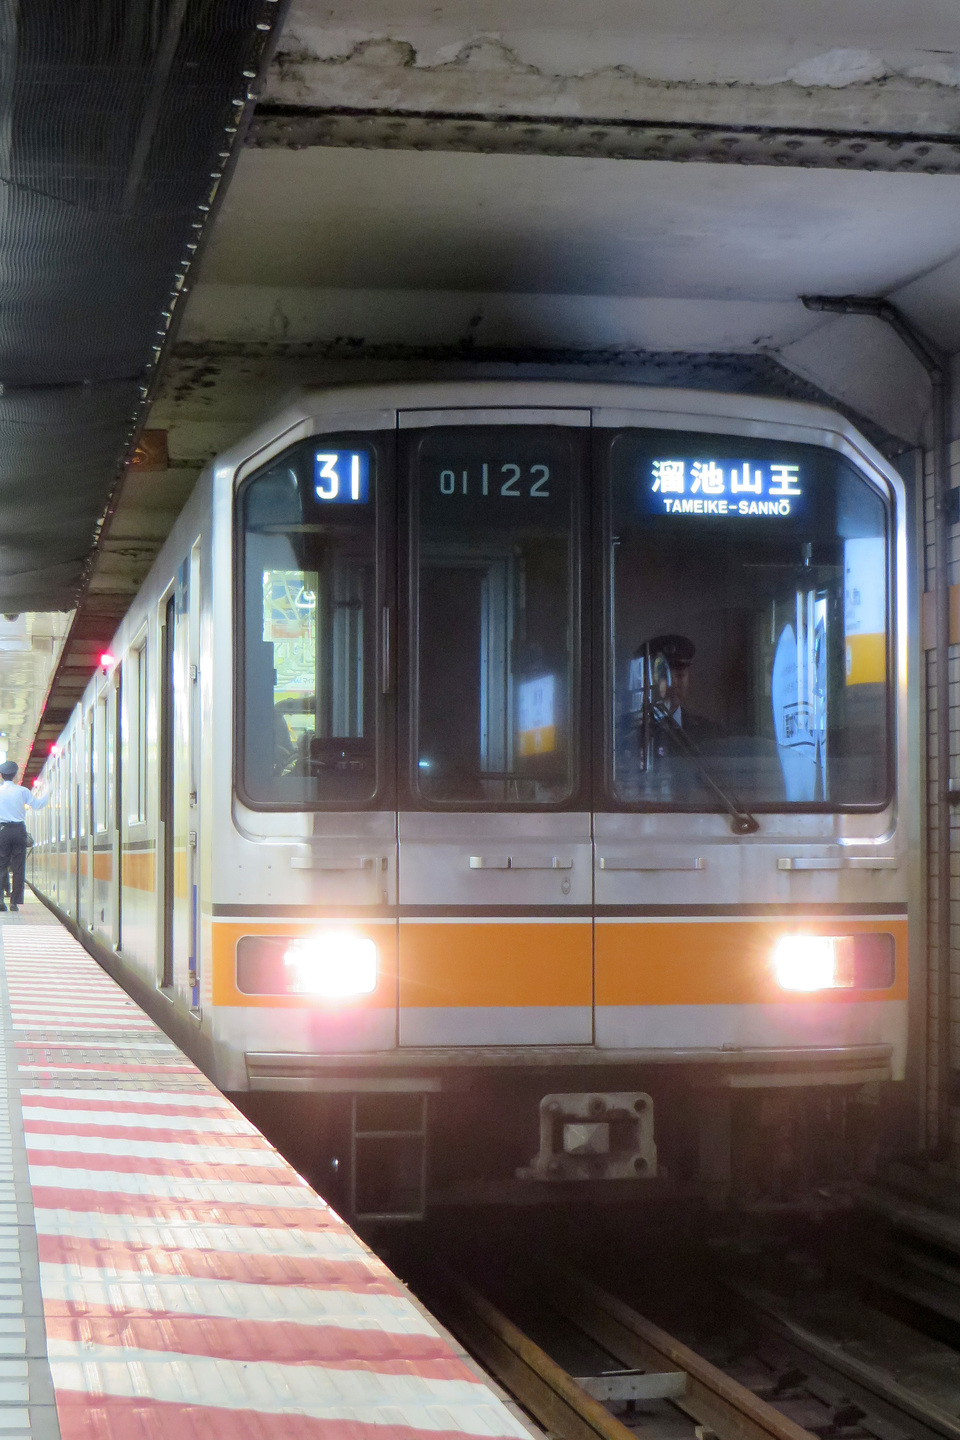 【メトロ】銀座線 渋谷駅線路切替工事に伴う部分運休の拡大写真